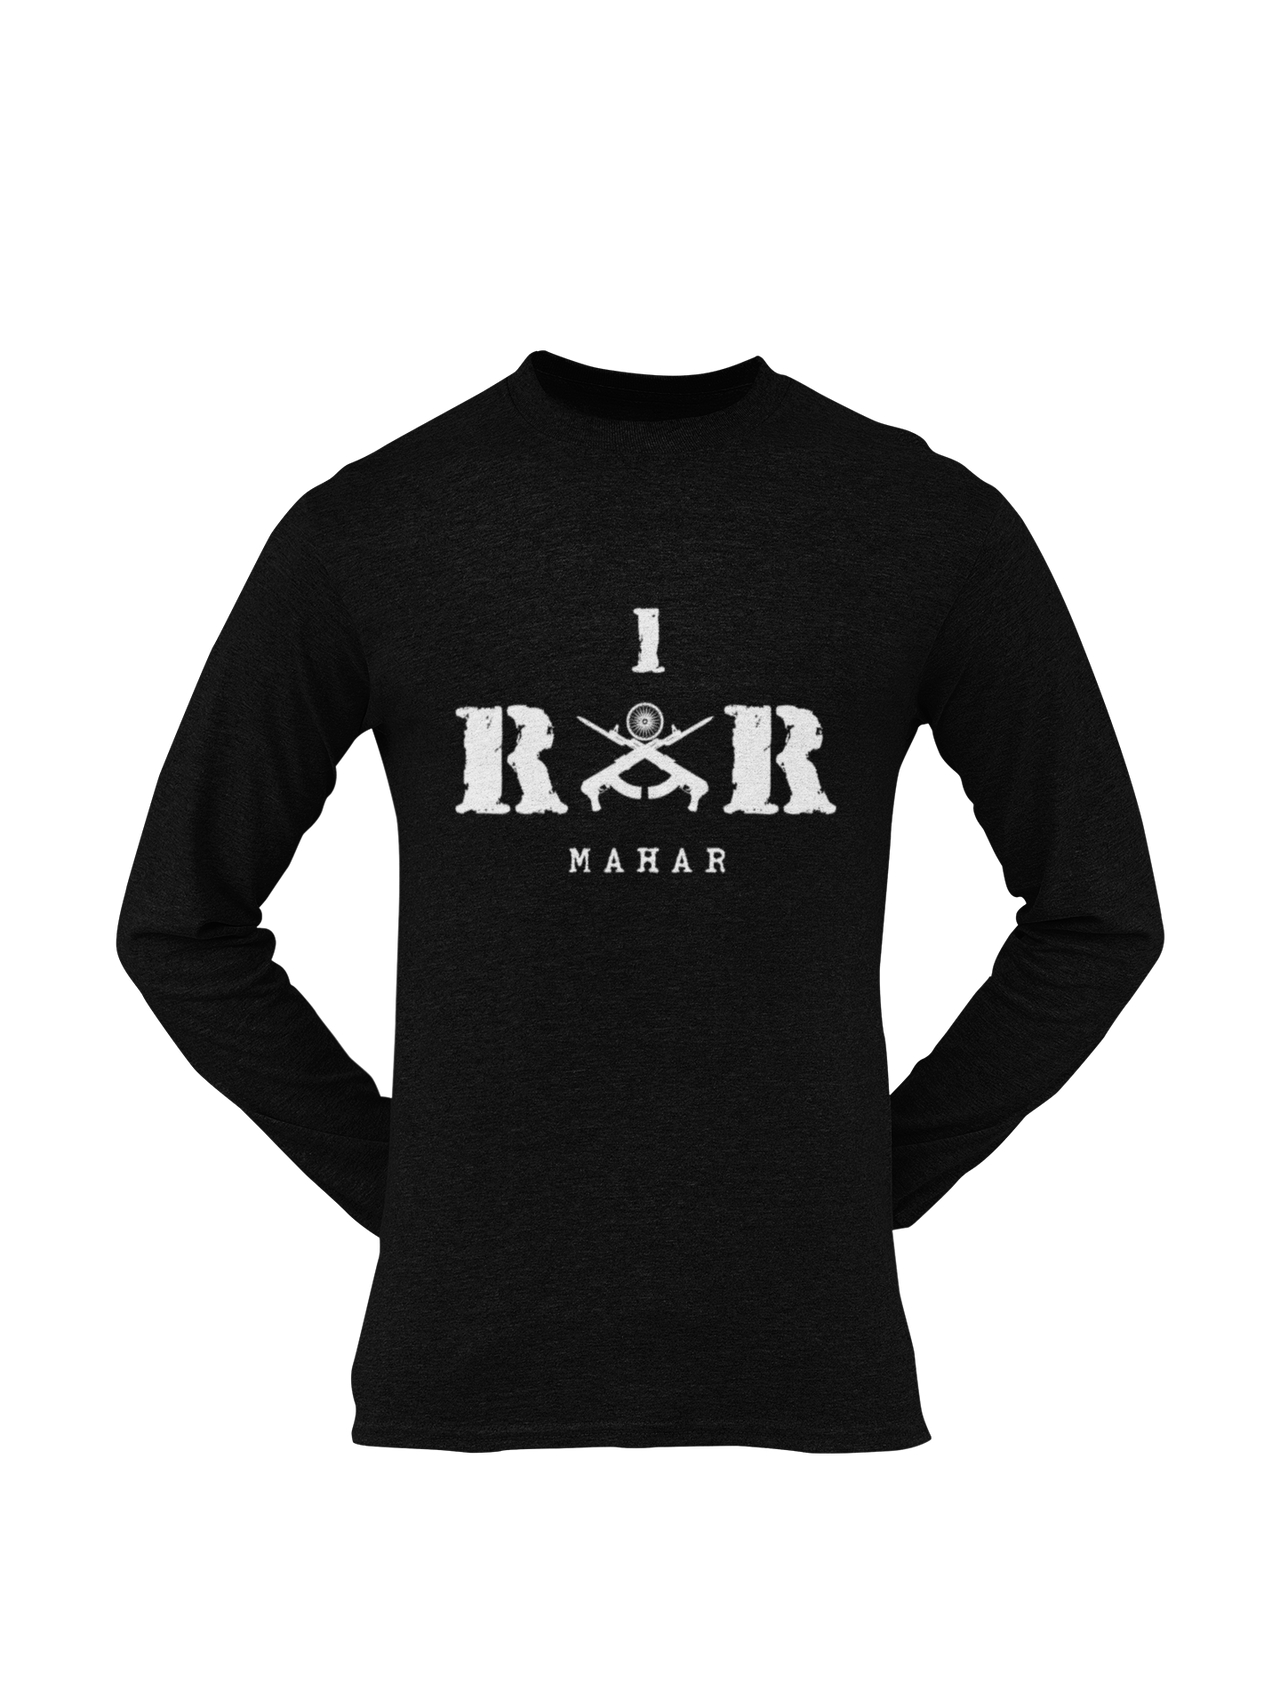 Rashtriya Rifles T-shirt - 1 RR Mahar (Men)